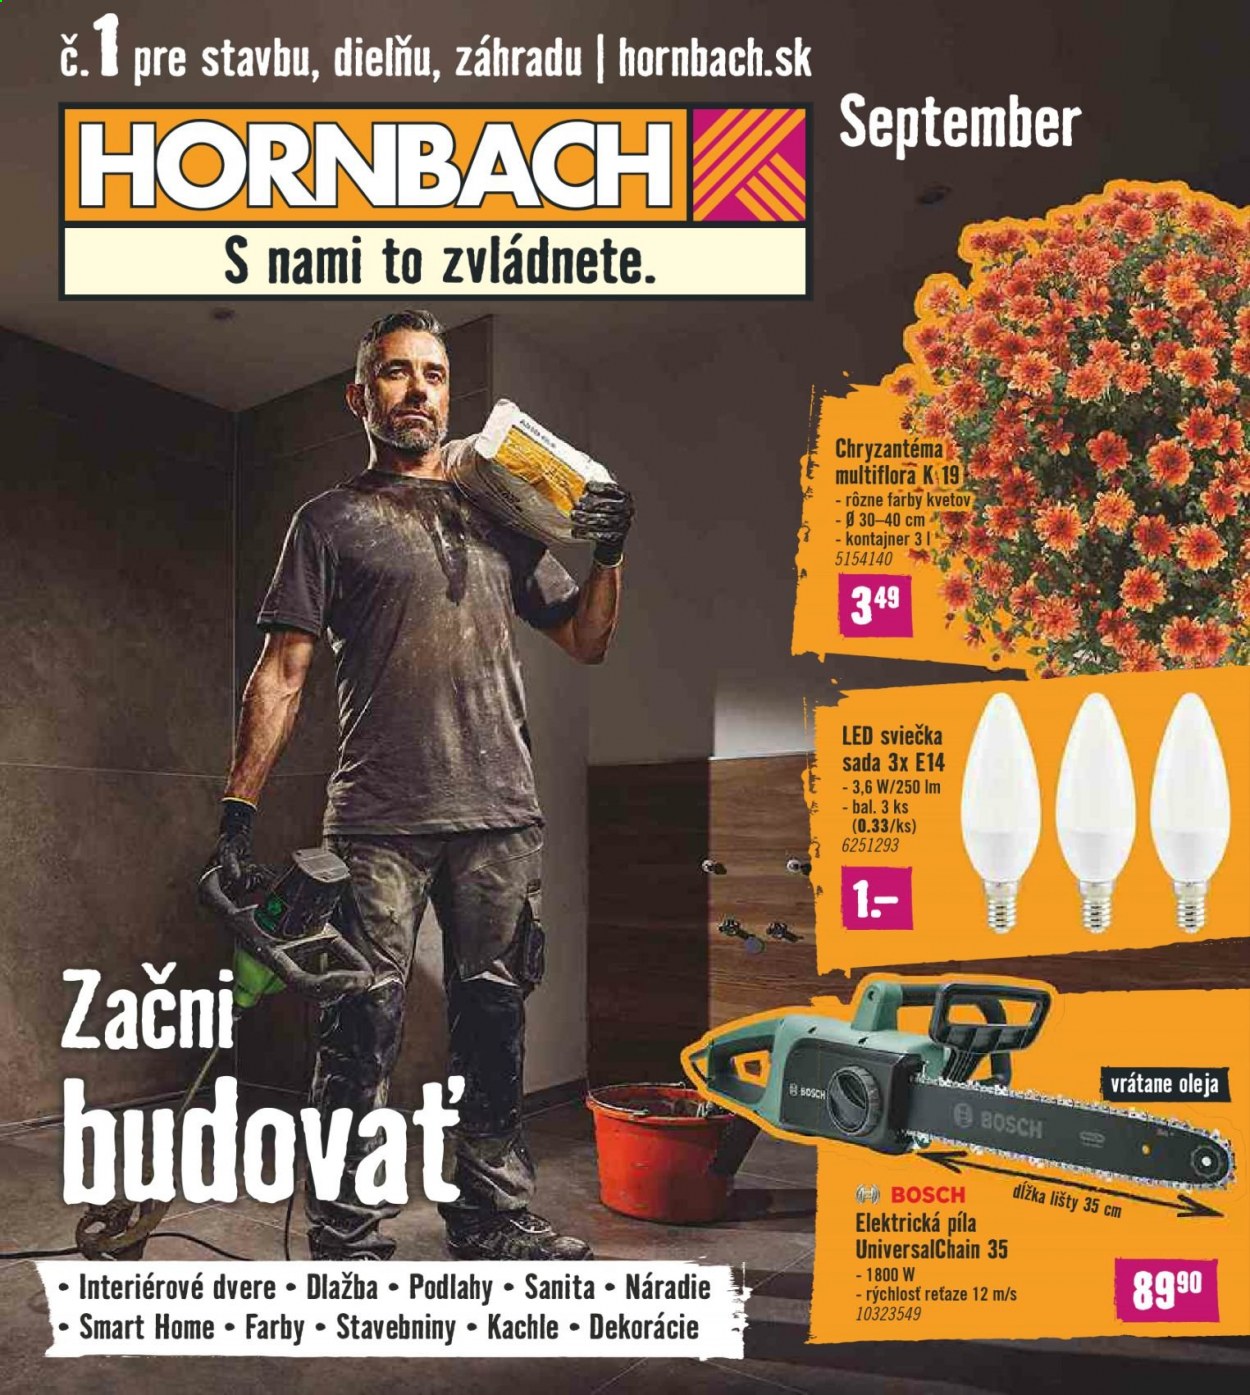 thumbnail - Leták Hornbach - 1.9.2021 - 29.9.2021 - Produkty v akcii - Bosch, dekorácie, LED sviečka, kachle, dlažba, dvere, interiérové dvere, náradie, píla, chryzantéma. Strana 1.